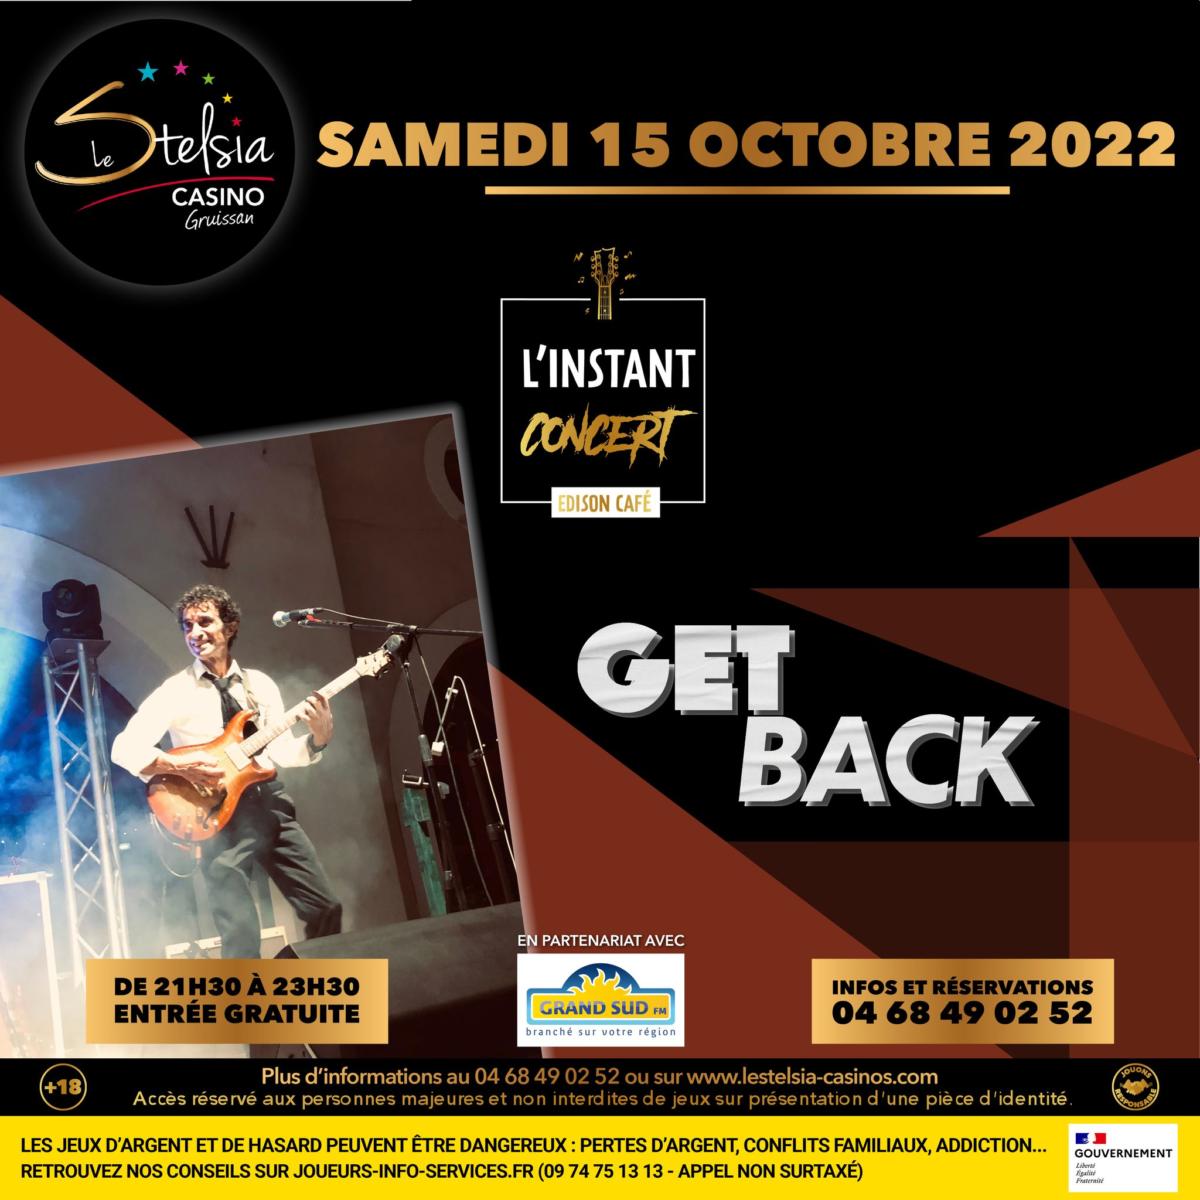 14-10-22 : André Djanranian et Paul Cribaillet du groupe Get Back en concert ce samedi 15 octobre au Stelsia Casino de gruissan